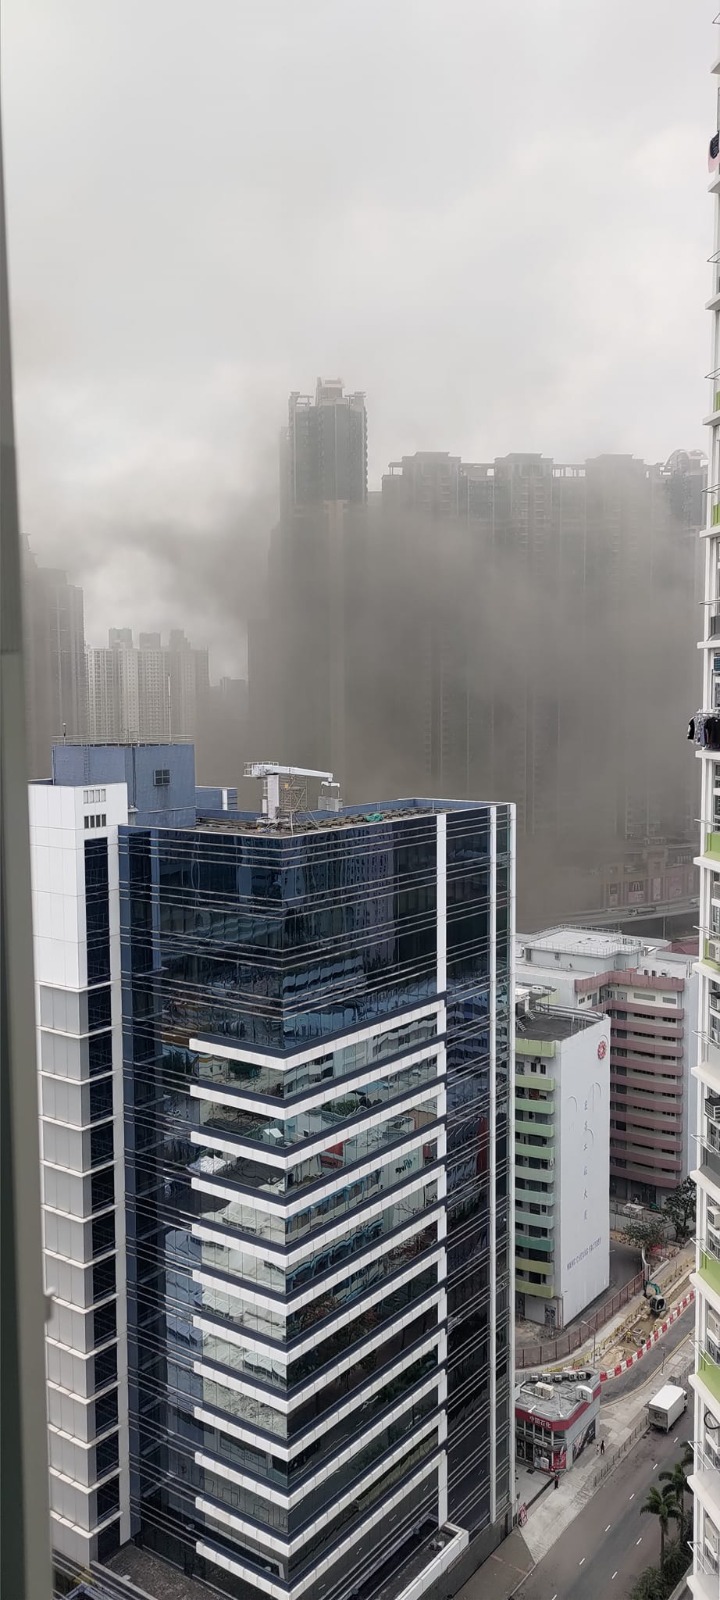 远处的屋苑居民亦能望到西九龙天空笼罩住烟雾。网上图片